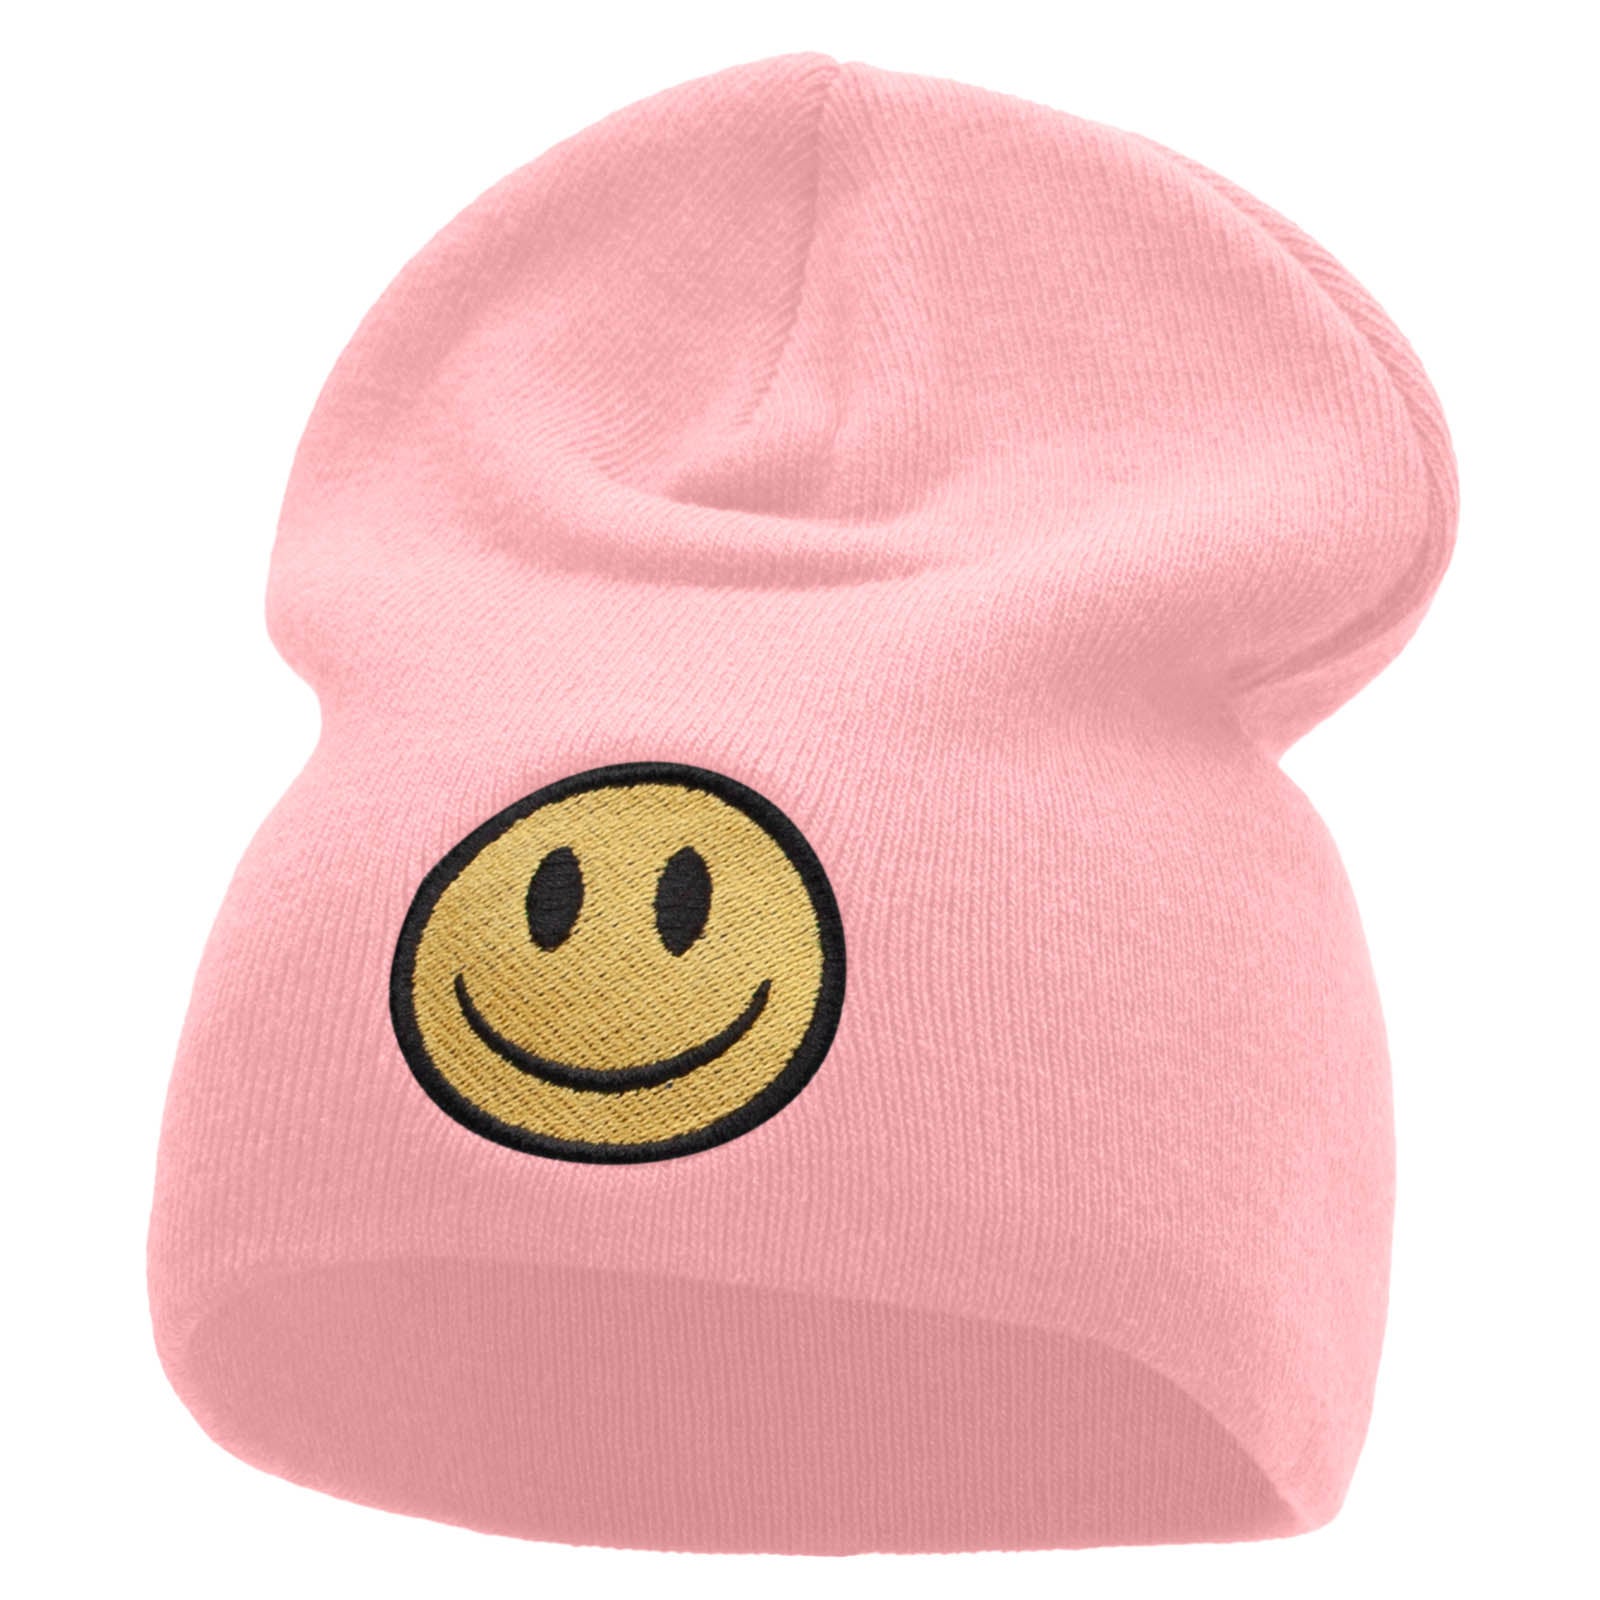 Smile Full Face Logo Embroidered Short Beanie - Pink OSFM